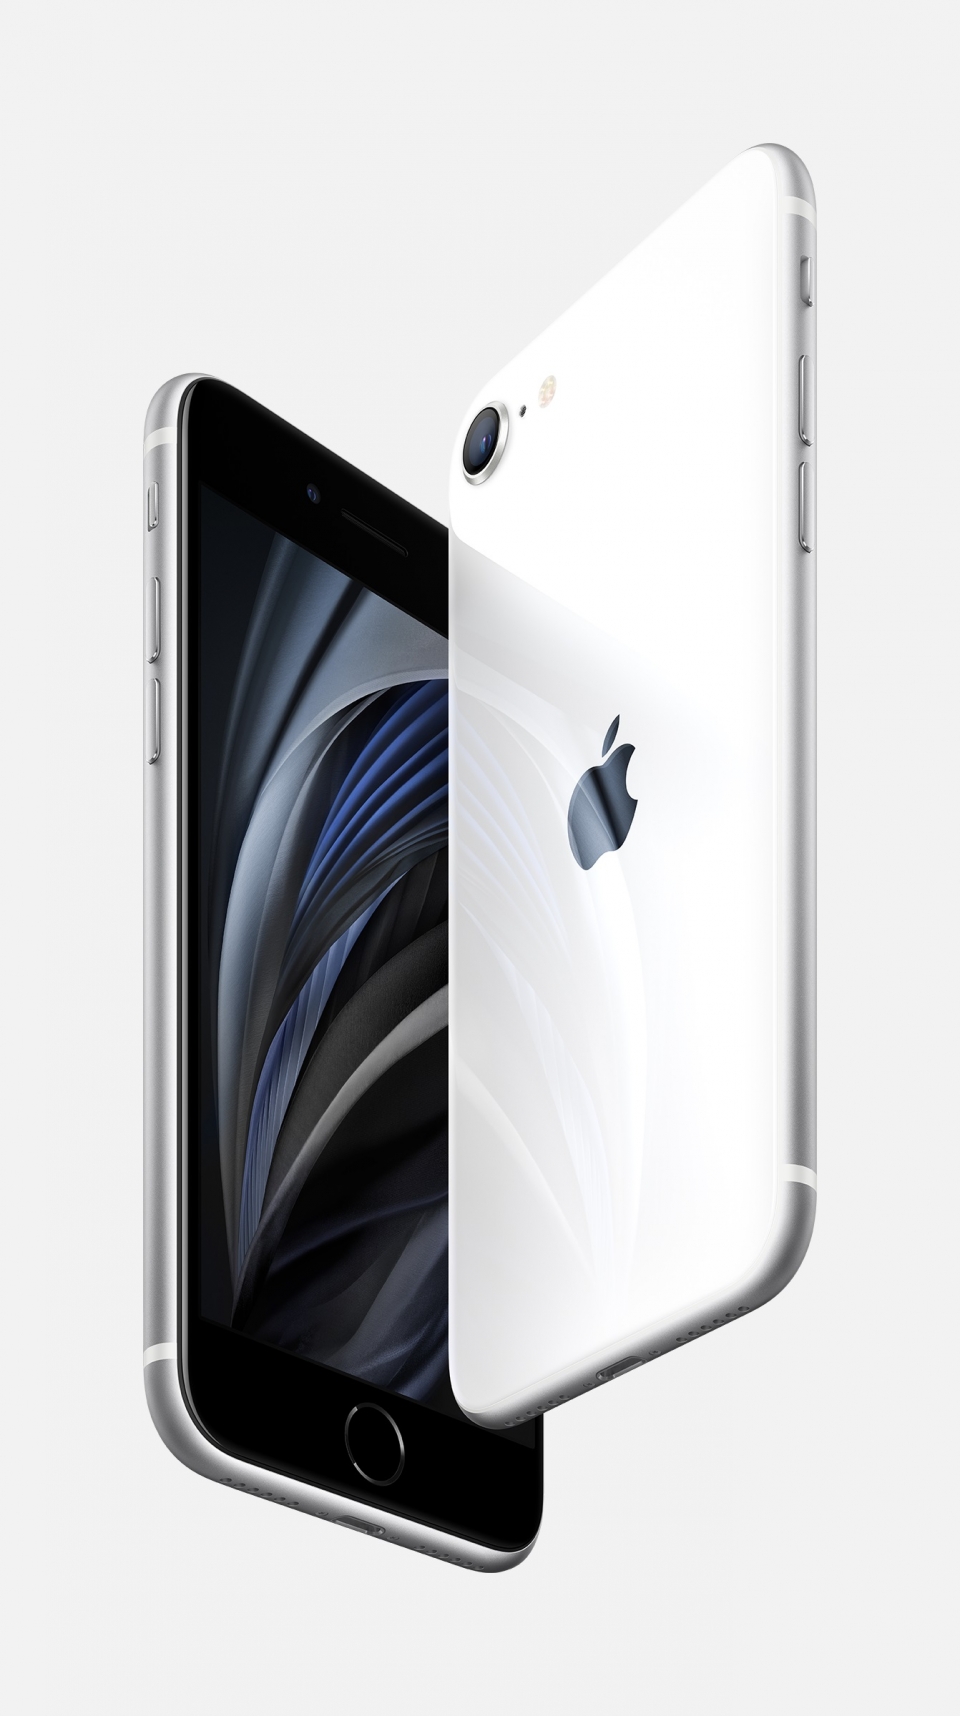 애플의 새 스마트폰 iPhone SE